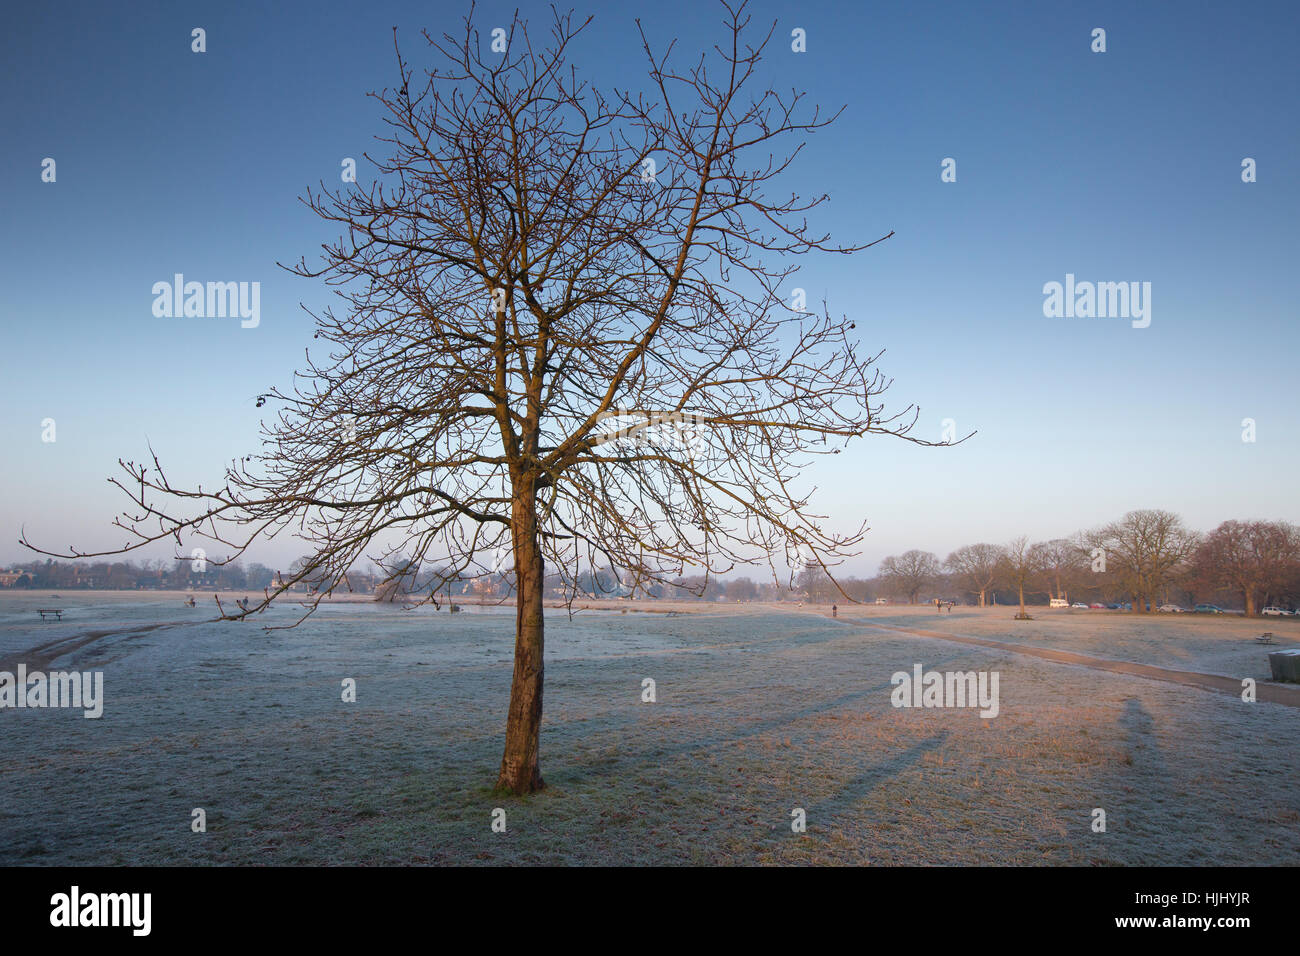 Tôt le matin, des températures de gel à l'étang de Rushmore, Wimbledon Common, dans le sud-ouest de Londres, Angleterre, Royaume-Uni Banque D'Images